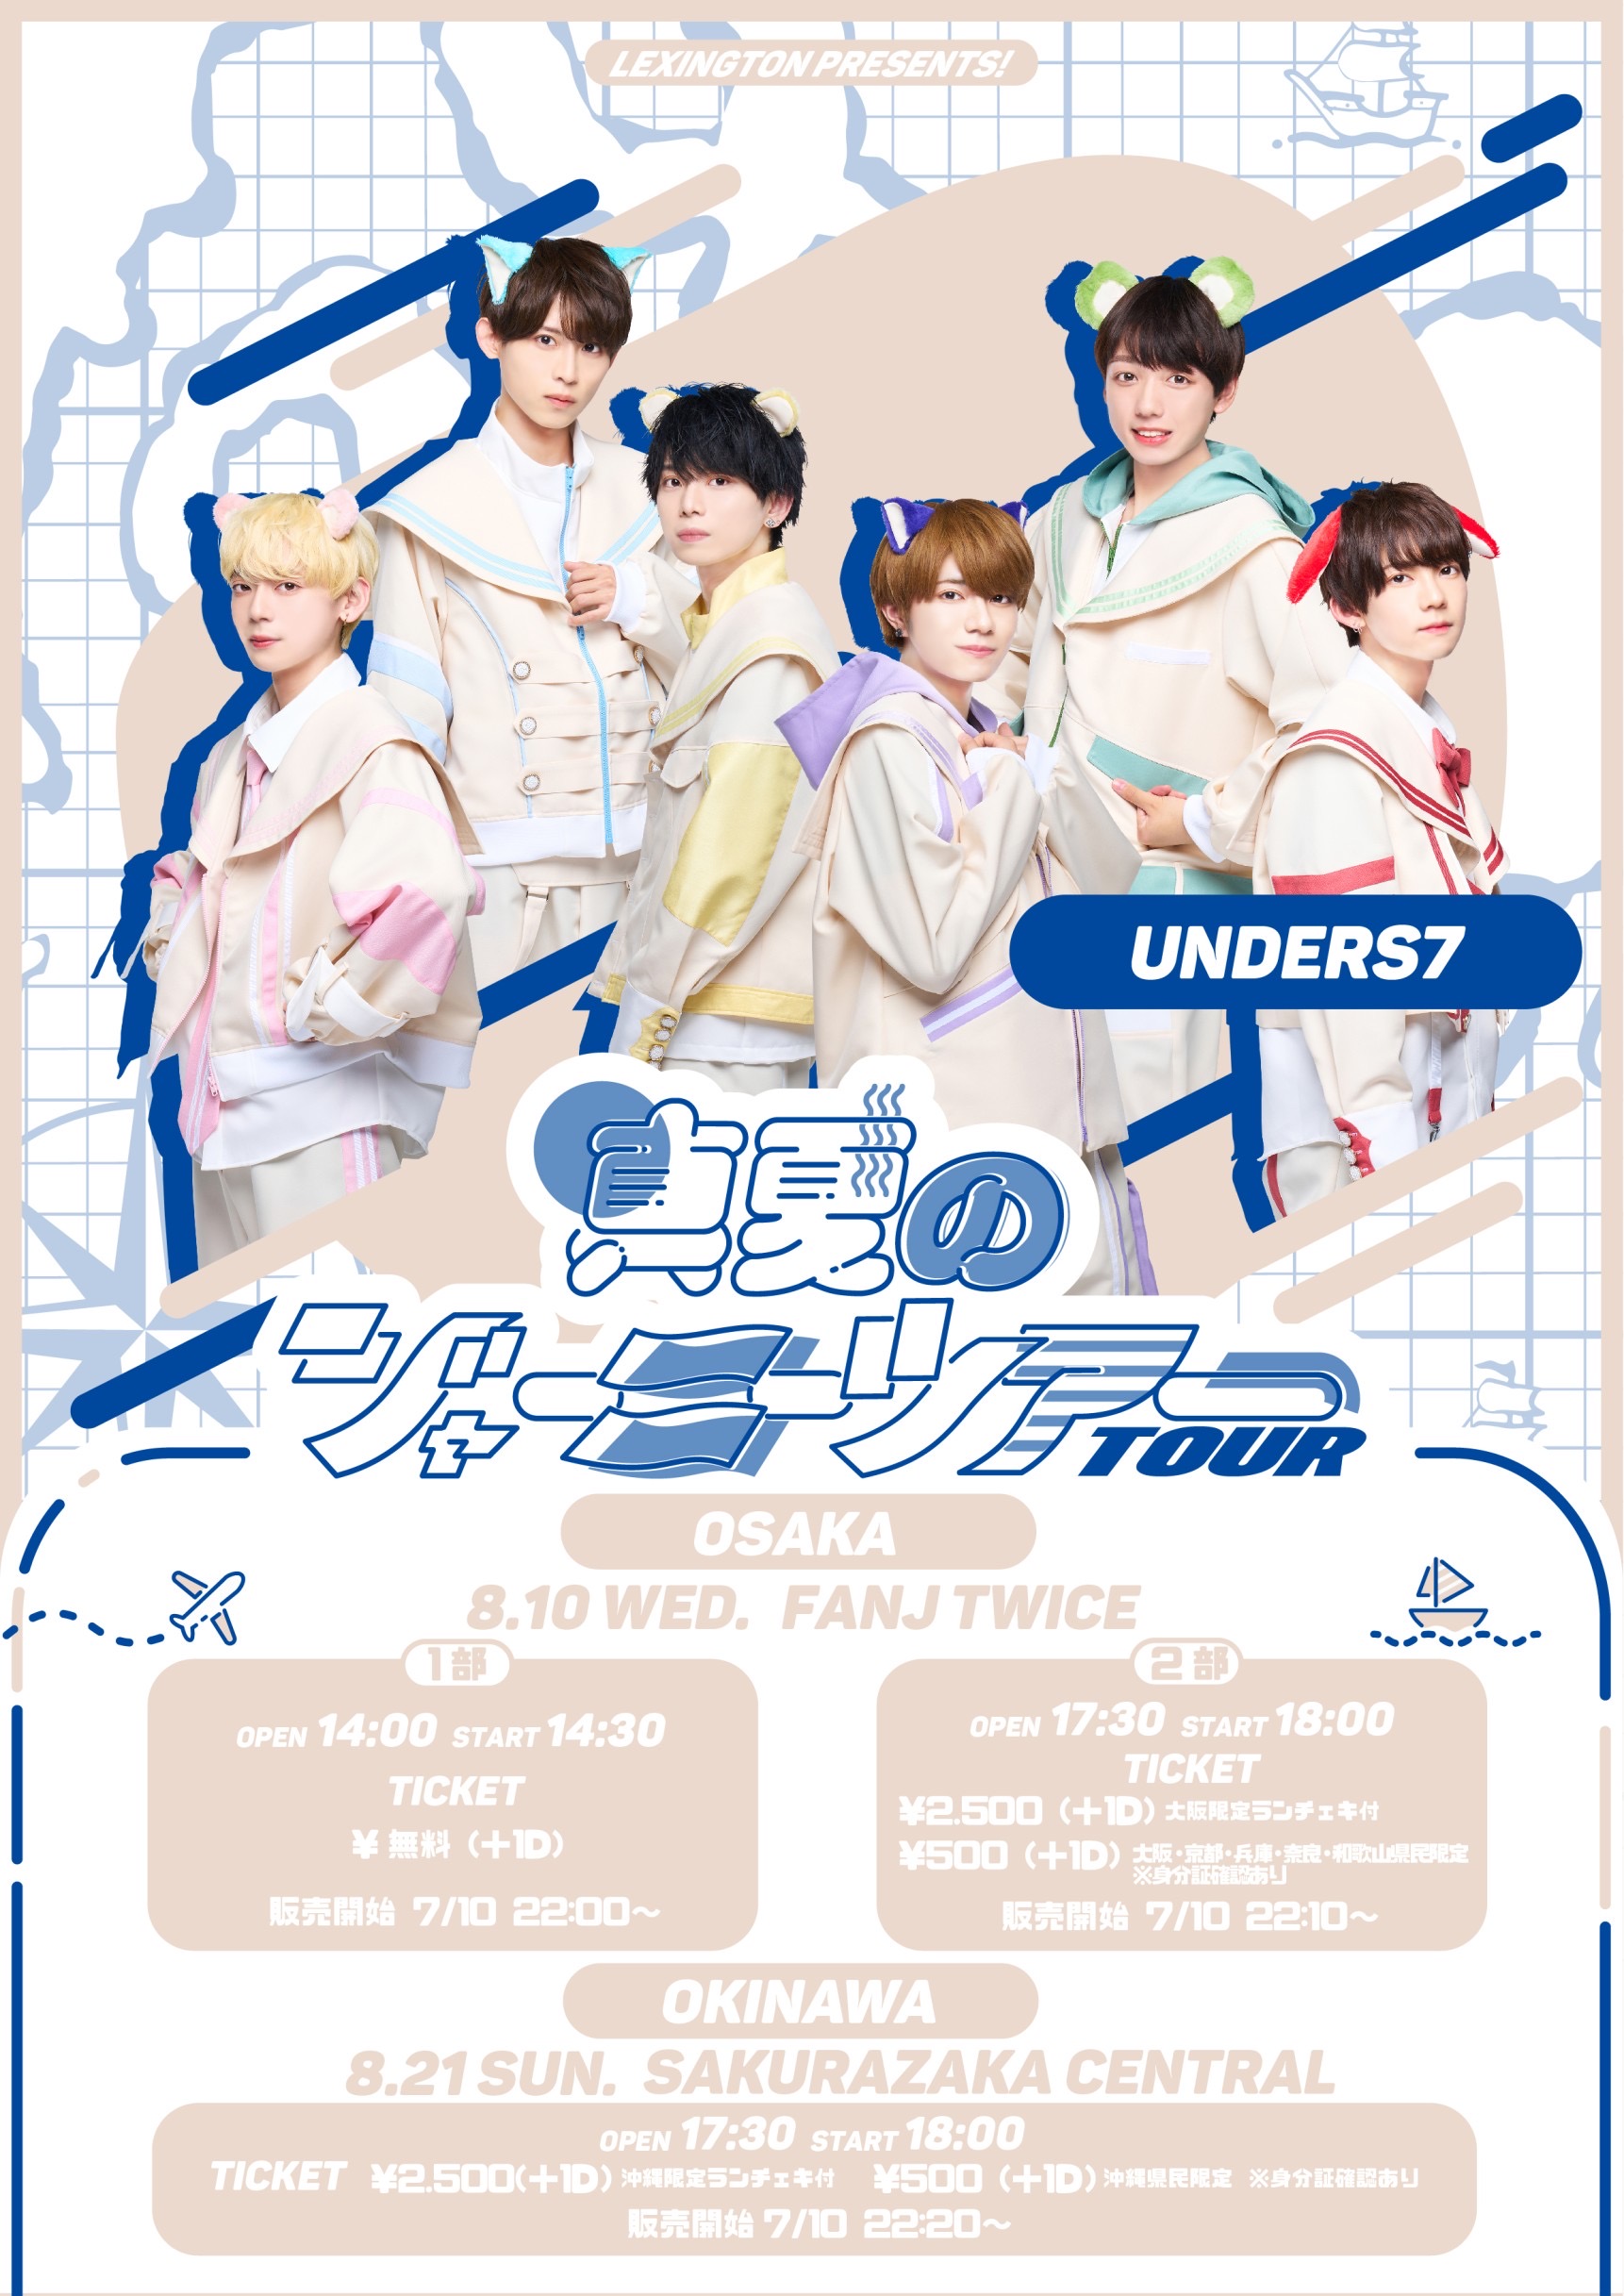 2022"真夏のジャーニーツアー”【FANJ twice(大阪) unders7 1部】